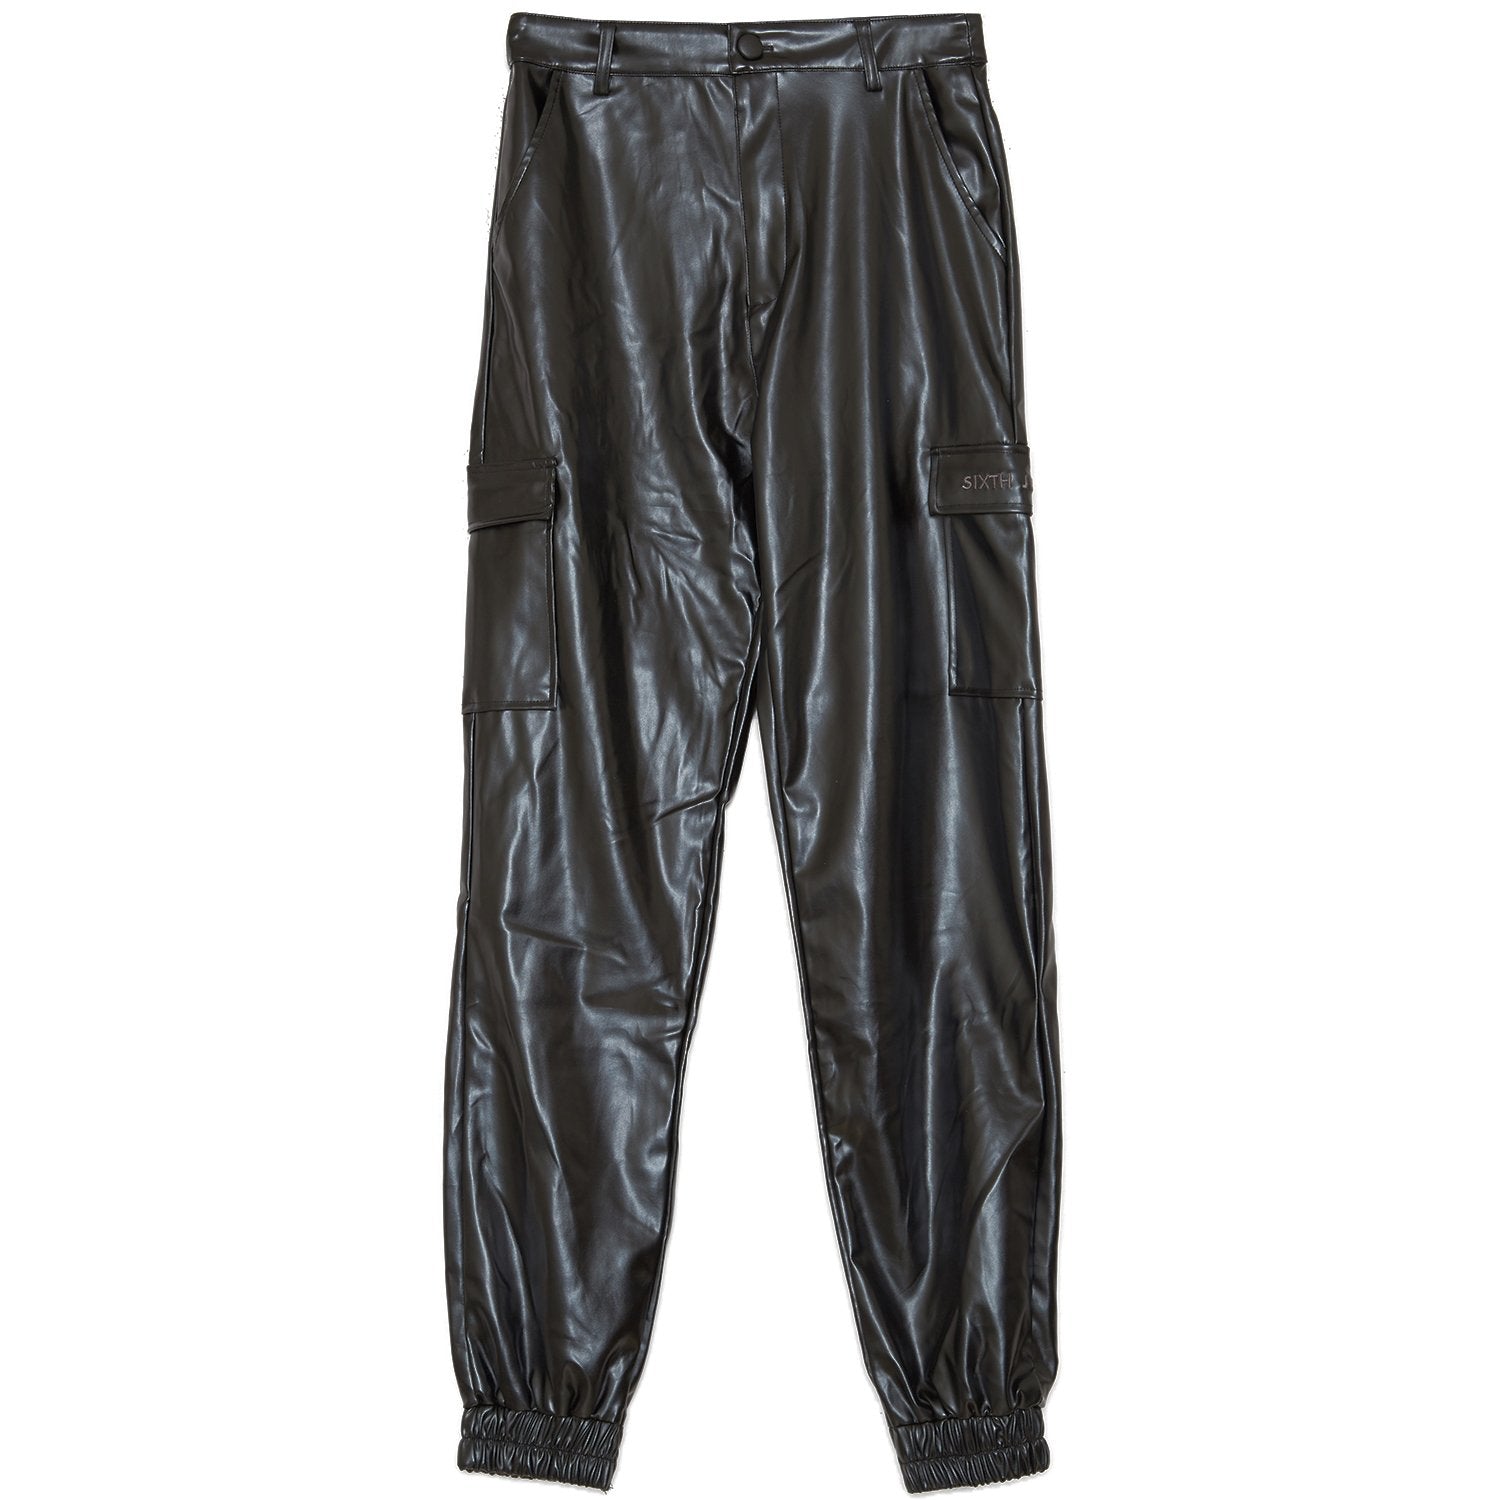 Pantalon cargo simili cuir noir